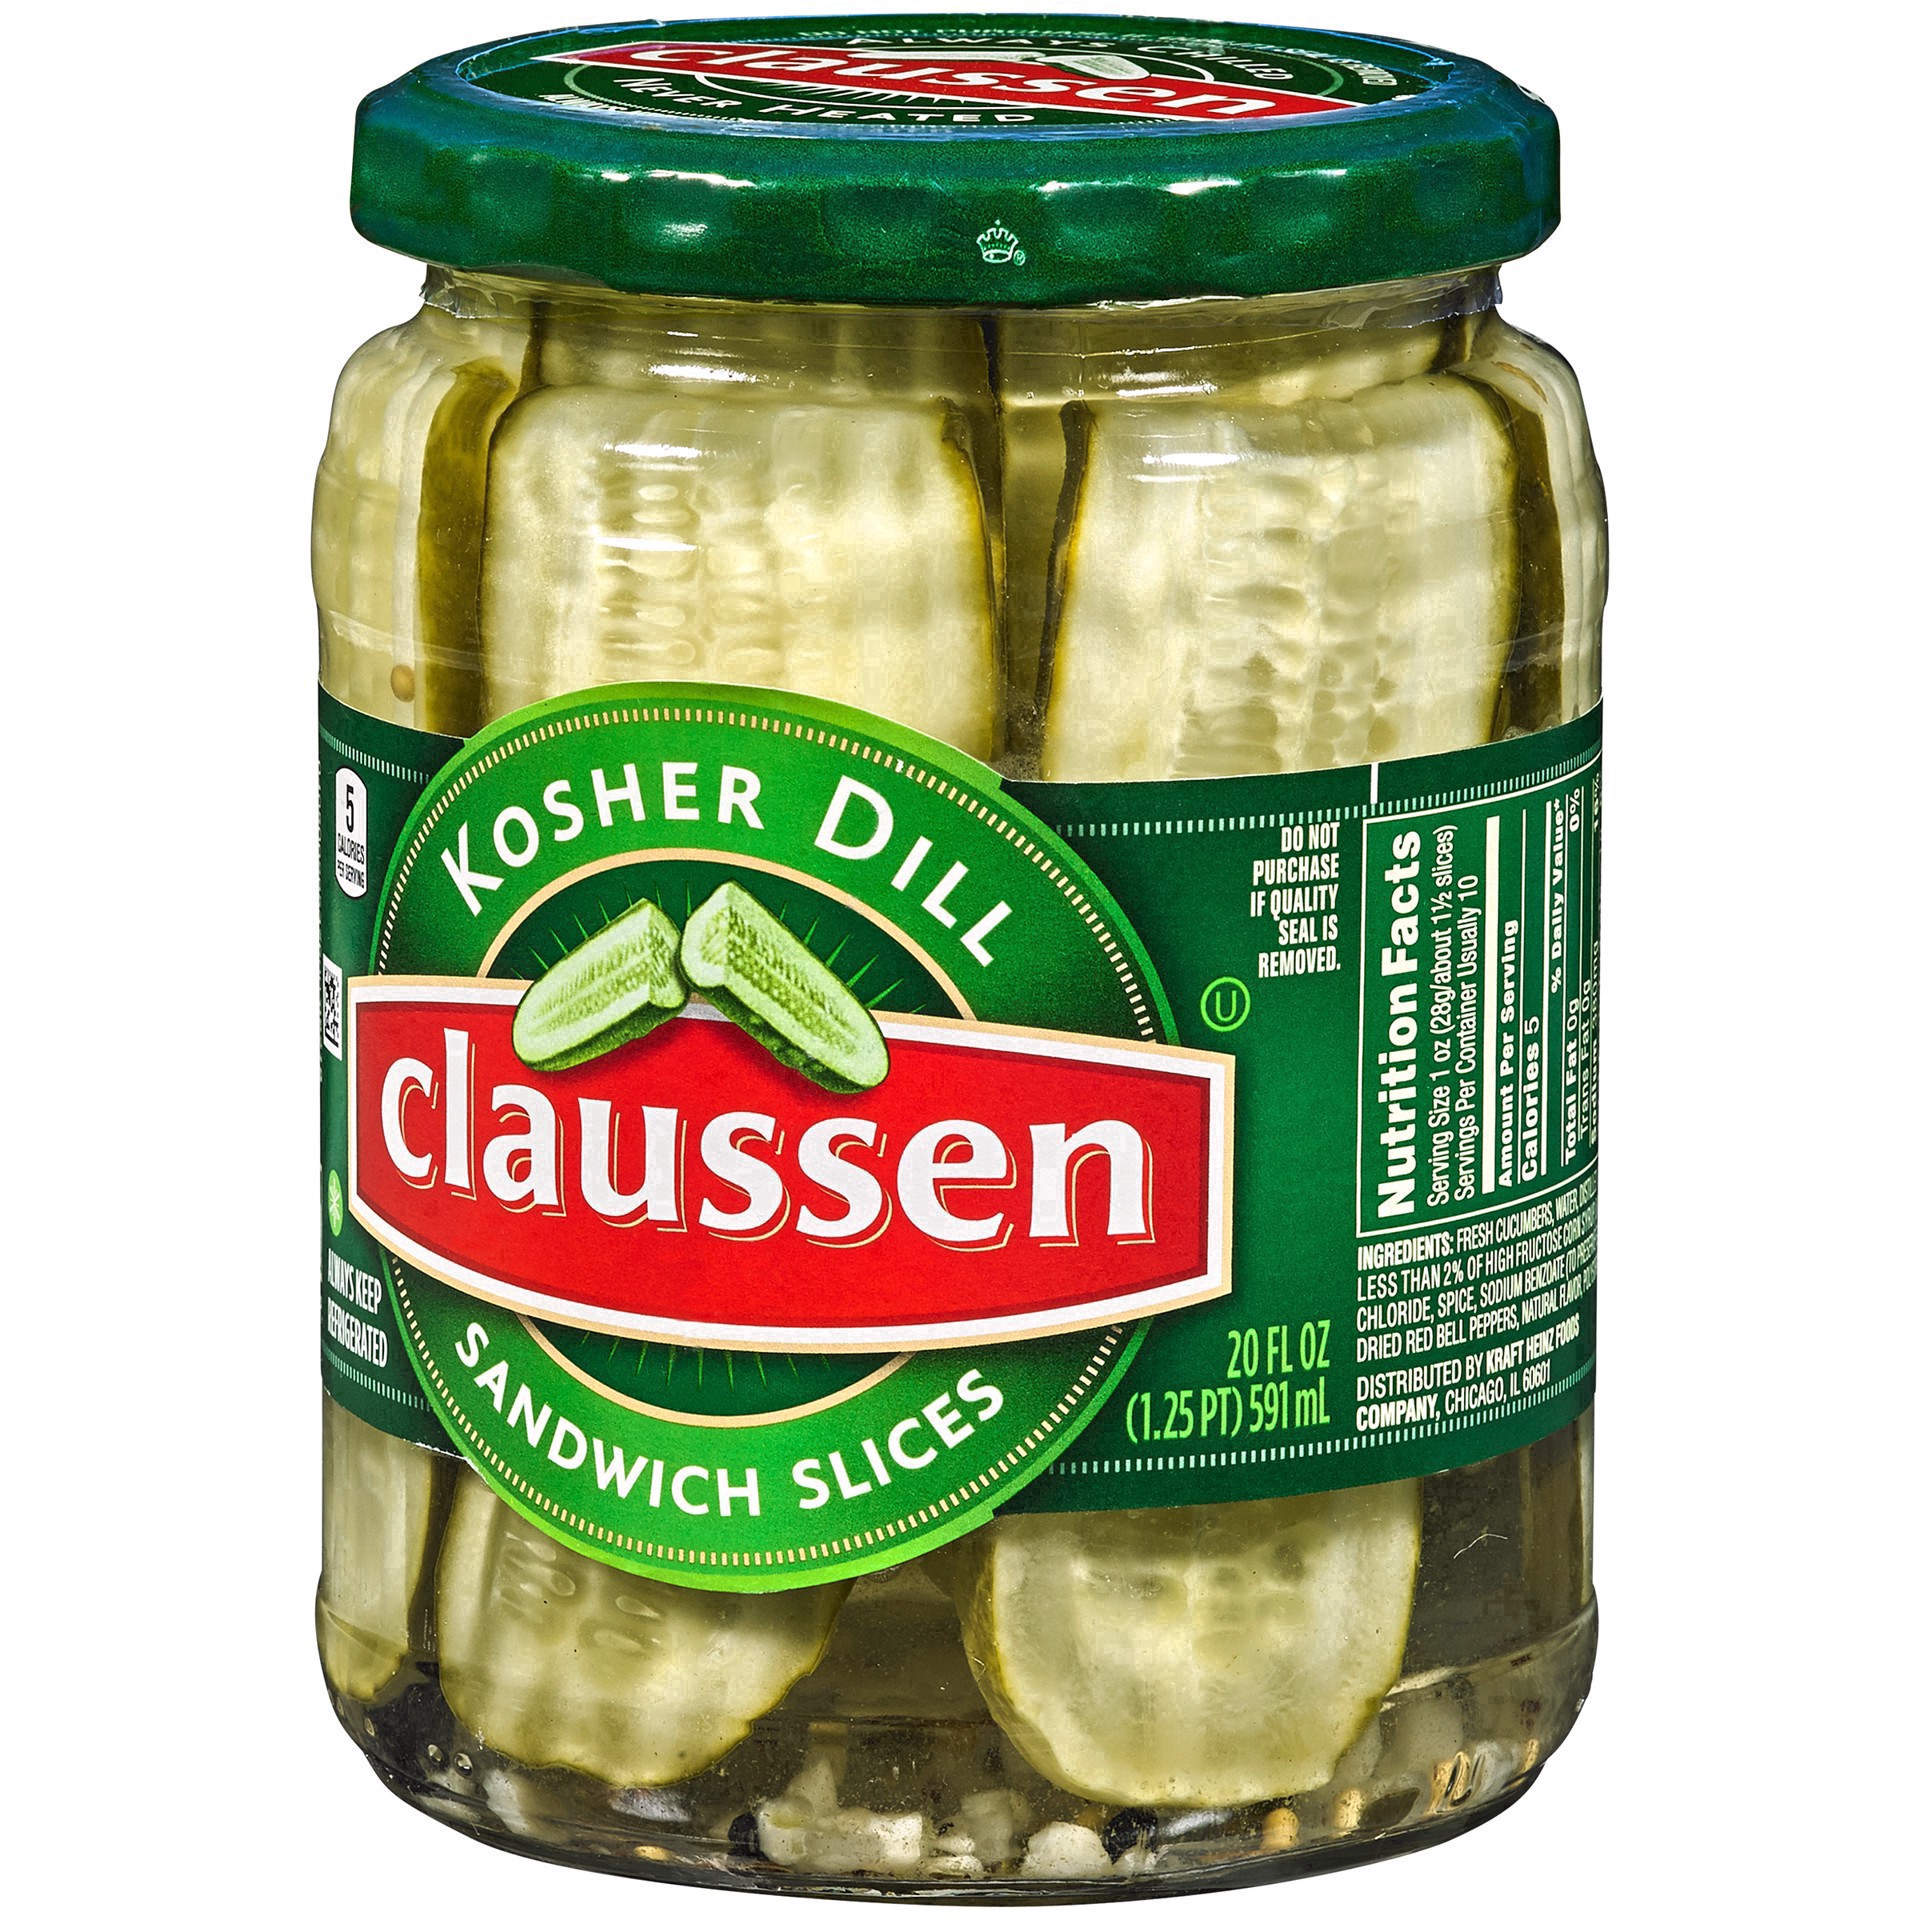 slide 26 of 144, Claussen Kosher Dill Pickle Sandwich Slices, 20 fl. oz. Jar, 20 fl oz